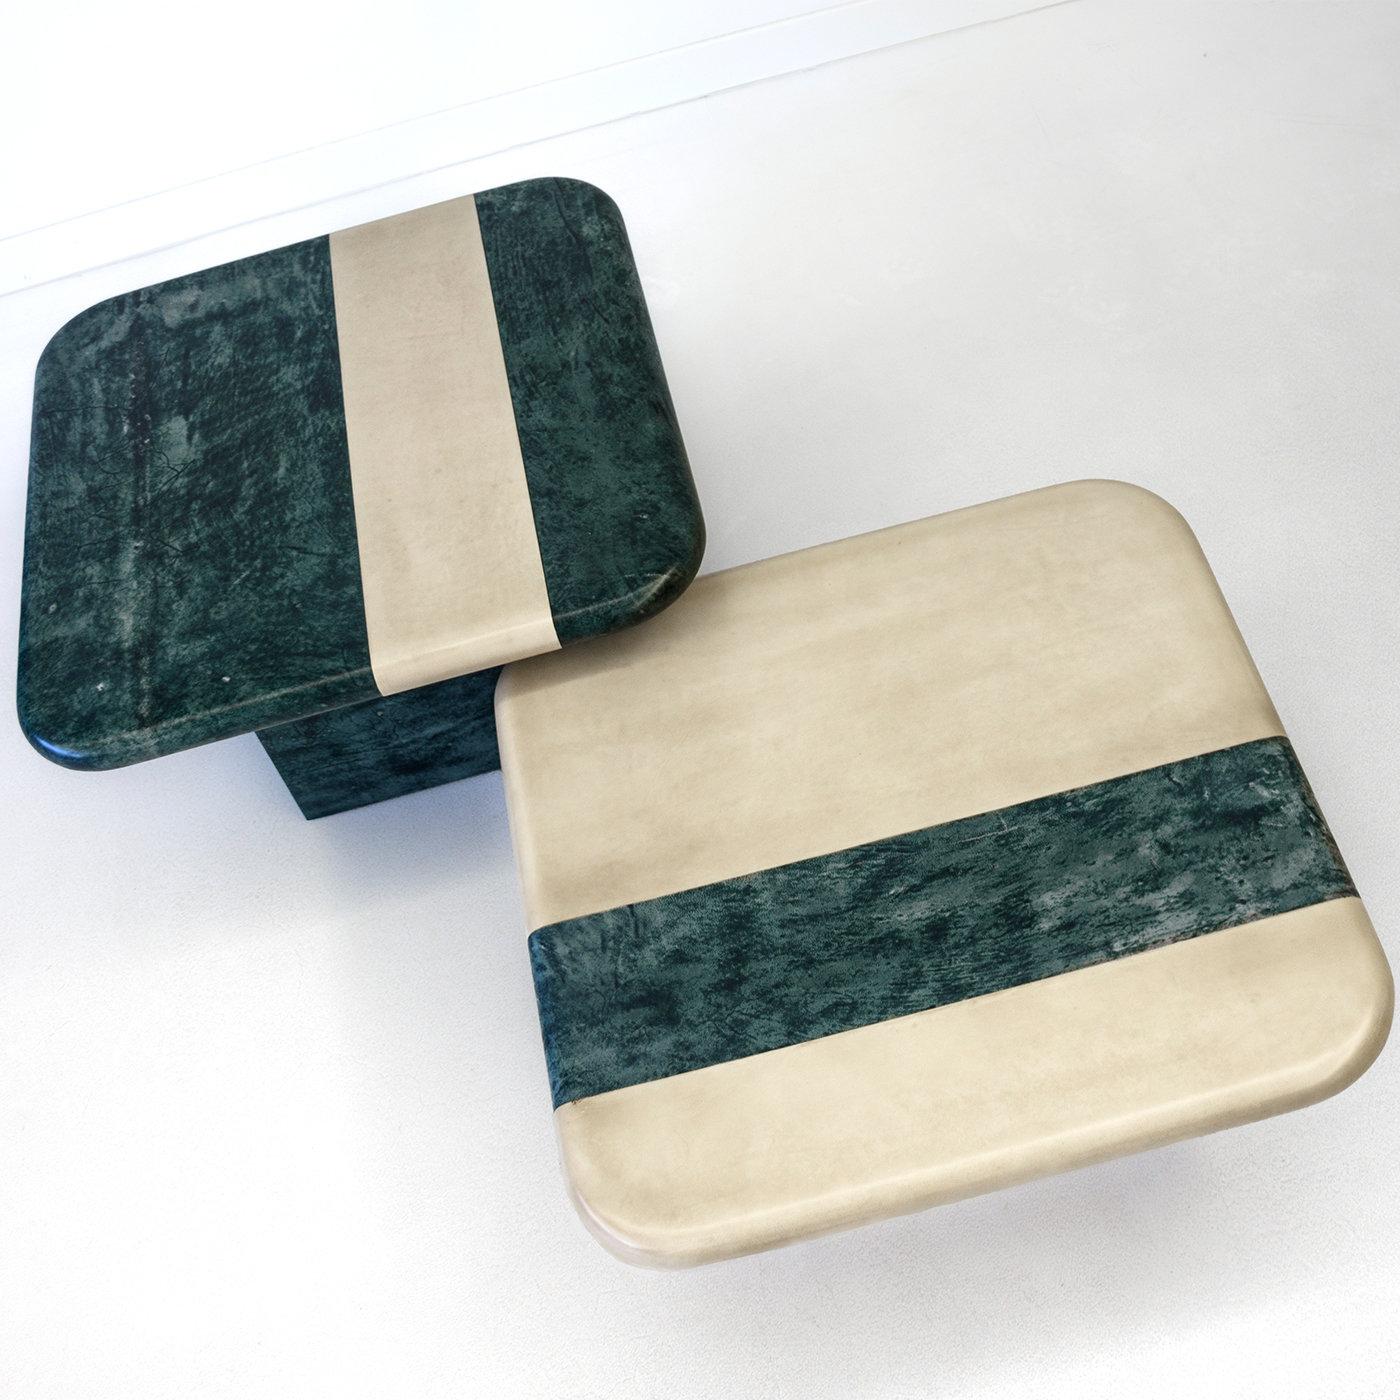 Réalisé avec une attention méticuleuse à la qualité et aux détails, cet ensemble de tables basses est défini par un plateau carré décoré du même motif géométrique en couleurs inversées : bleu-vert avec bande sable pour la version haute (80 X 80 X